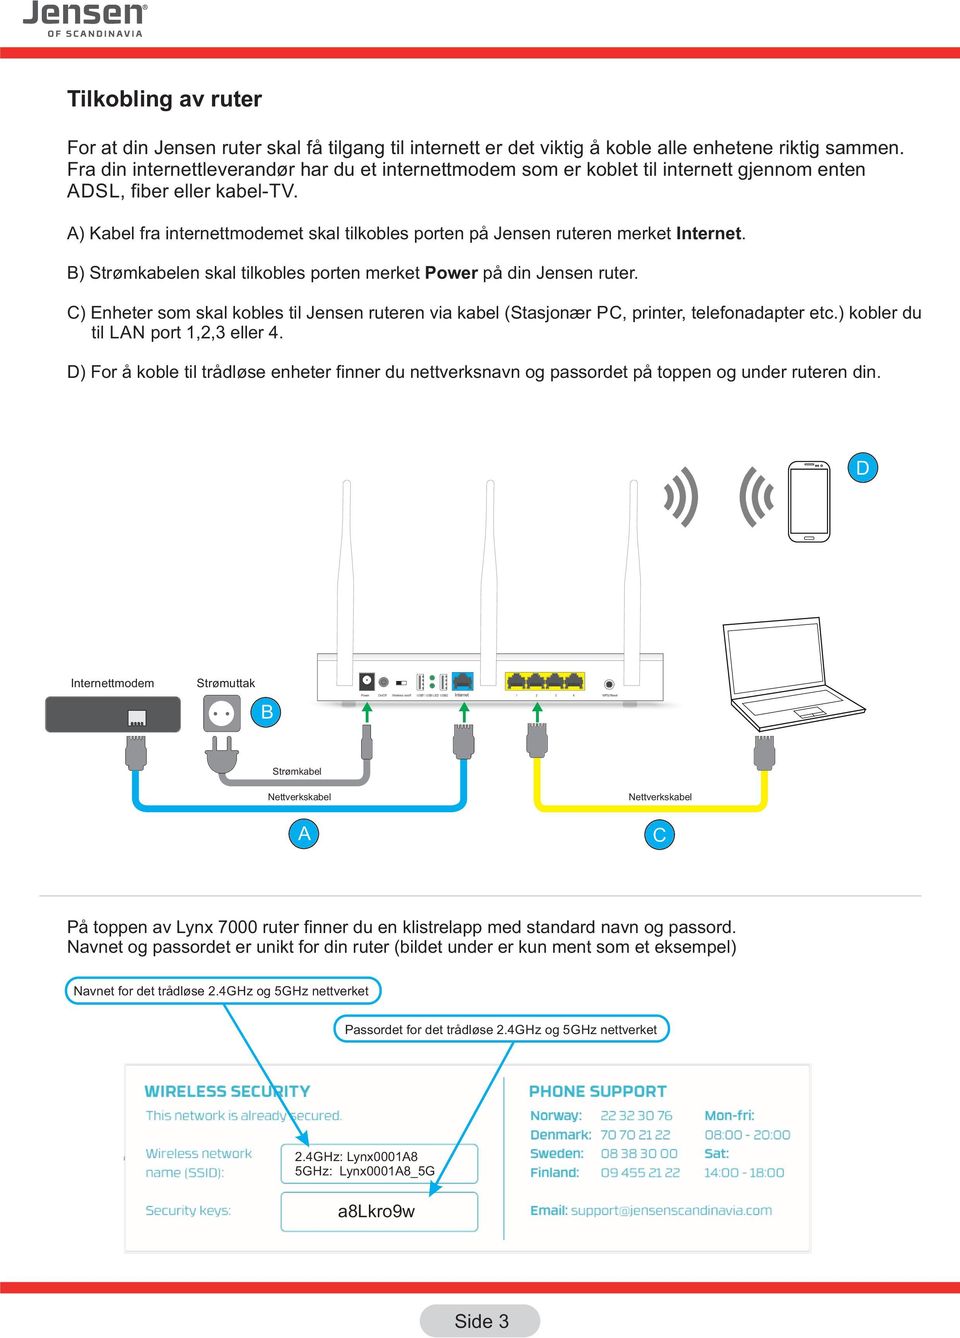 A) Kabel fra internettmodemet skal tilkobles porten på Jensen ruteren merket Internet. B) Strømkabelen skal tilkobles porten merket Power på din Jensen ruter.